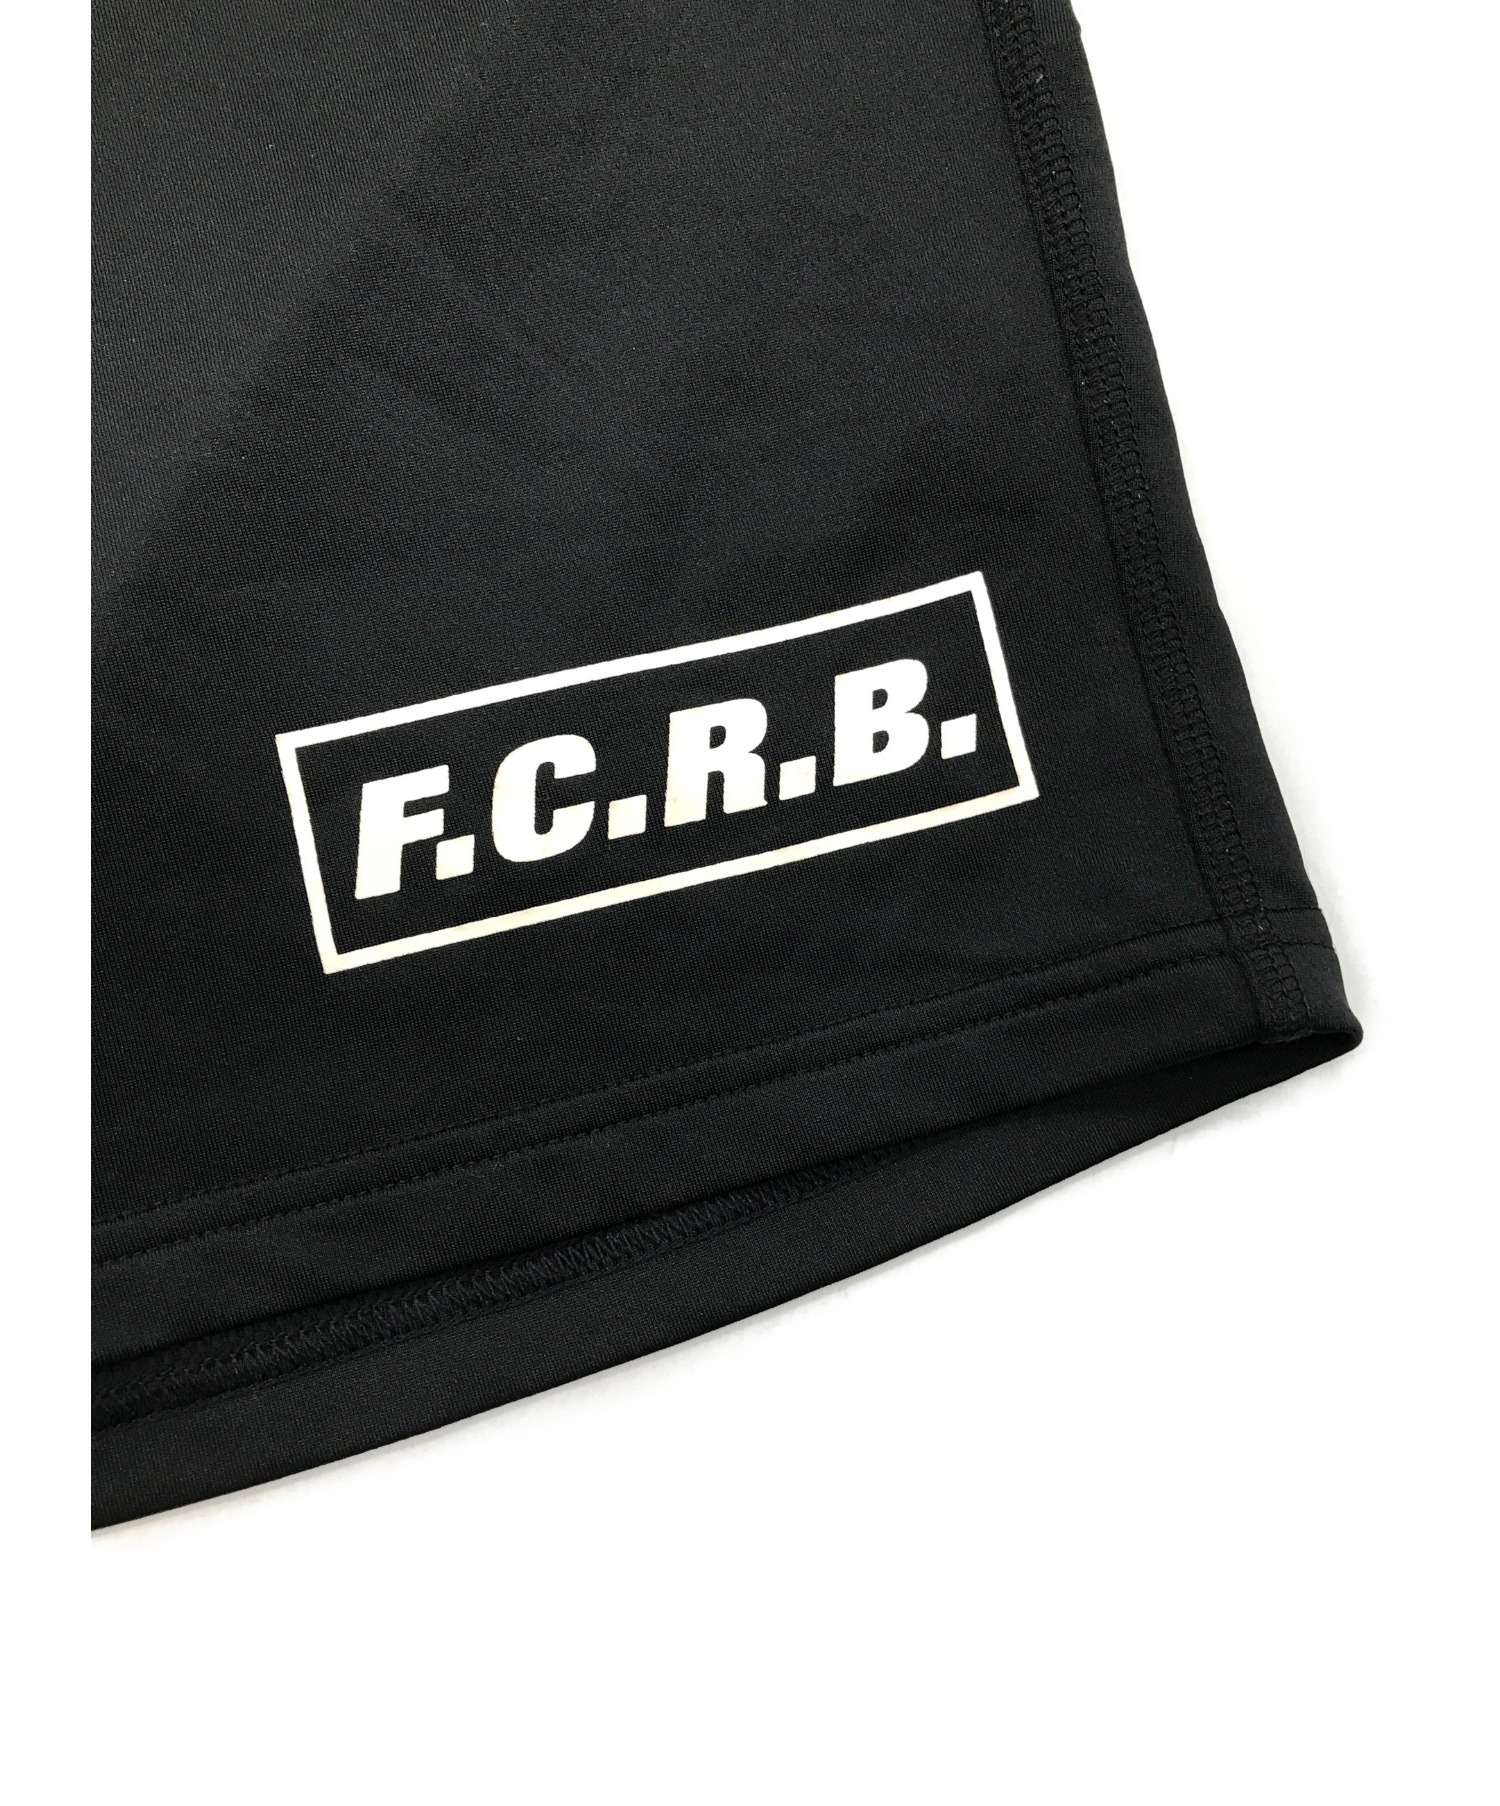 F.C.R.B.×NIKE (エフシーリアルブリストル×ナイキ) セットアップジャージ ブラック サイズ:SIZE M